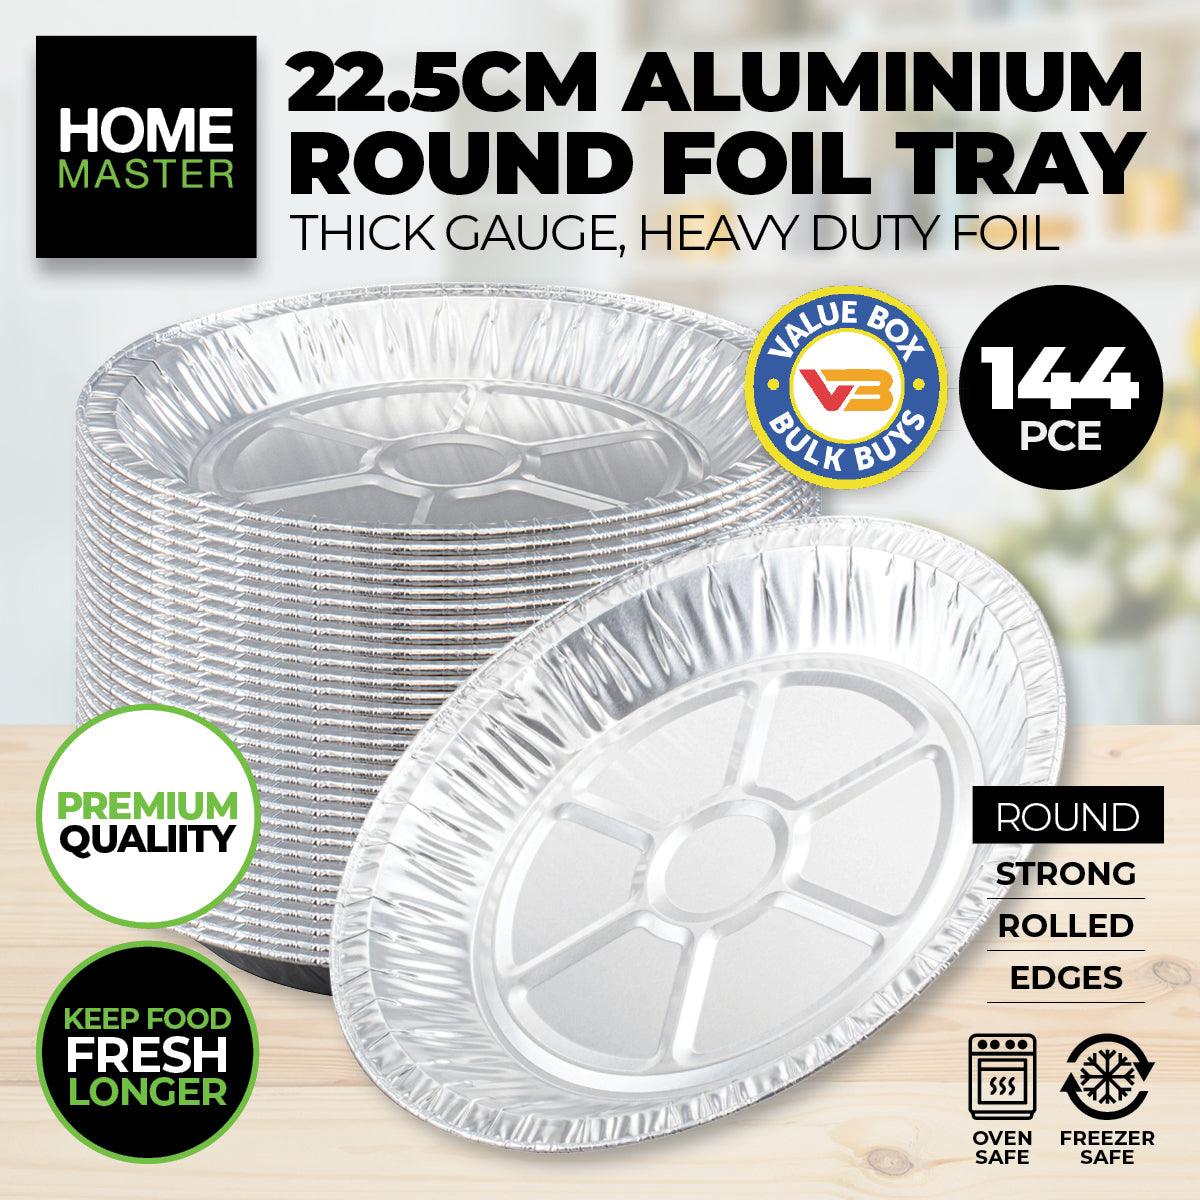 Home Master 144PCE Aluminium Foil Trays Round Premium Quality 22.5cm